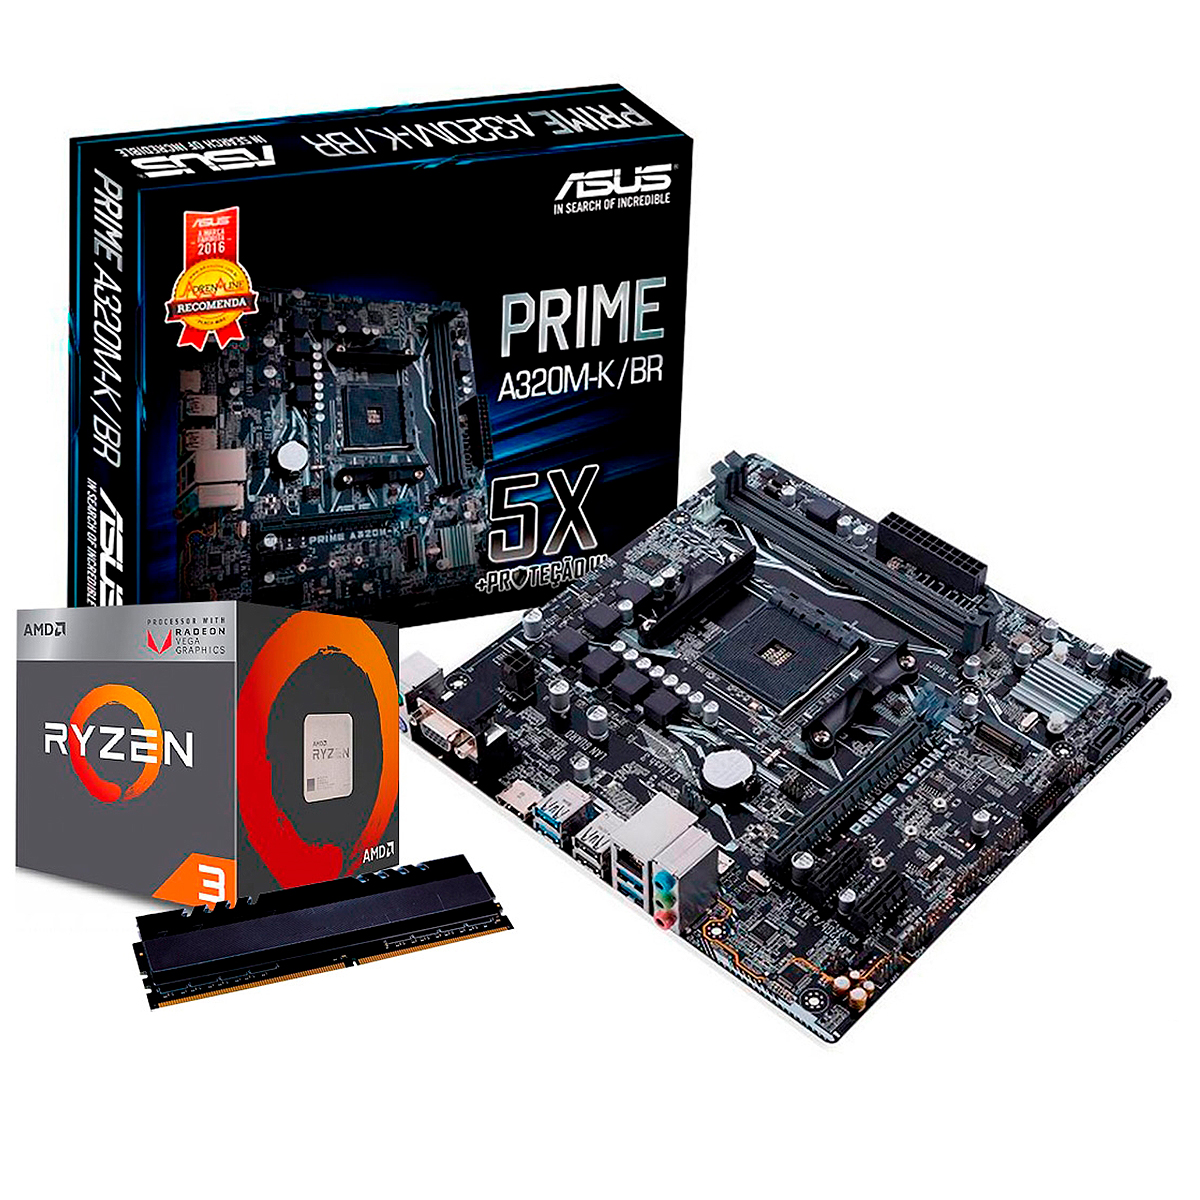 Kit Upgrade AMD Ryzen™ 5 3400G + Asus Prime A320M-K/BR + Memória 8GB DDR4